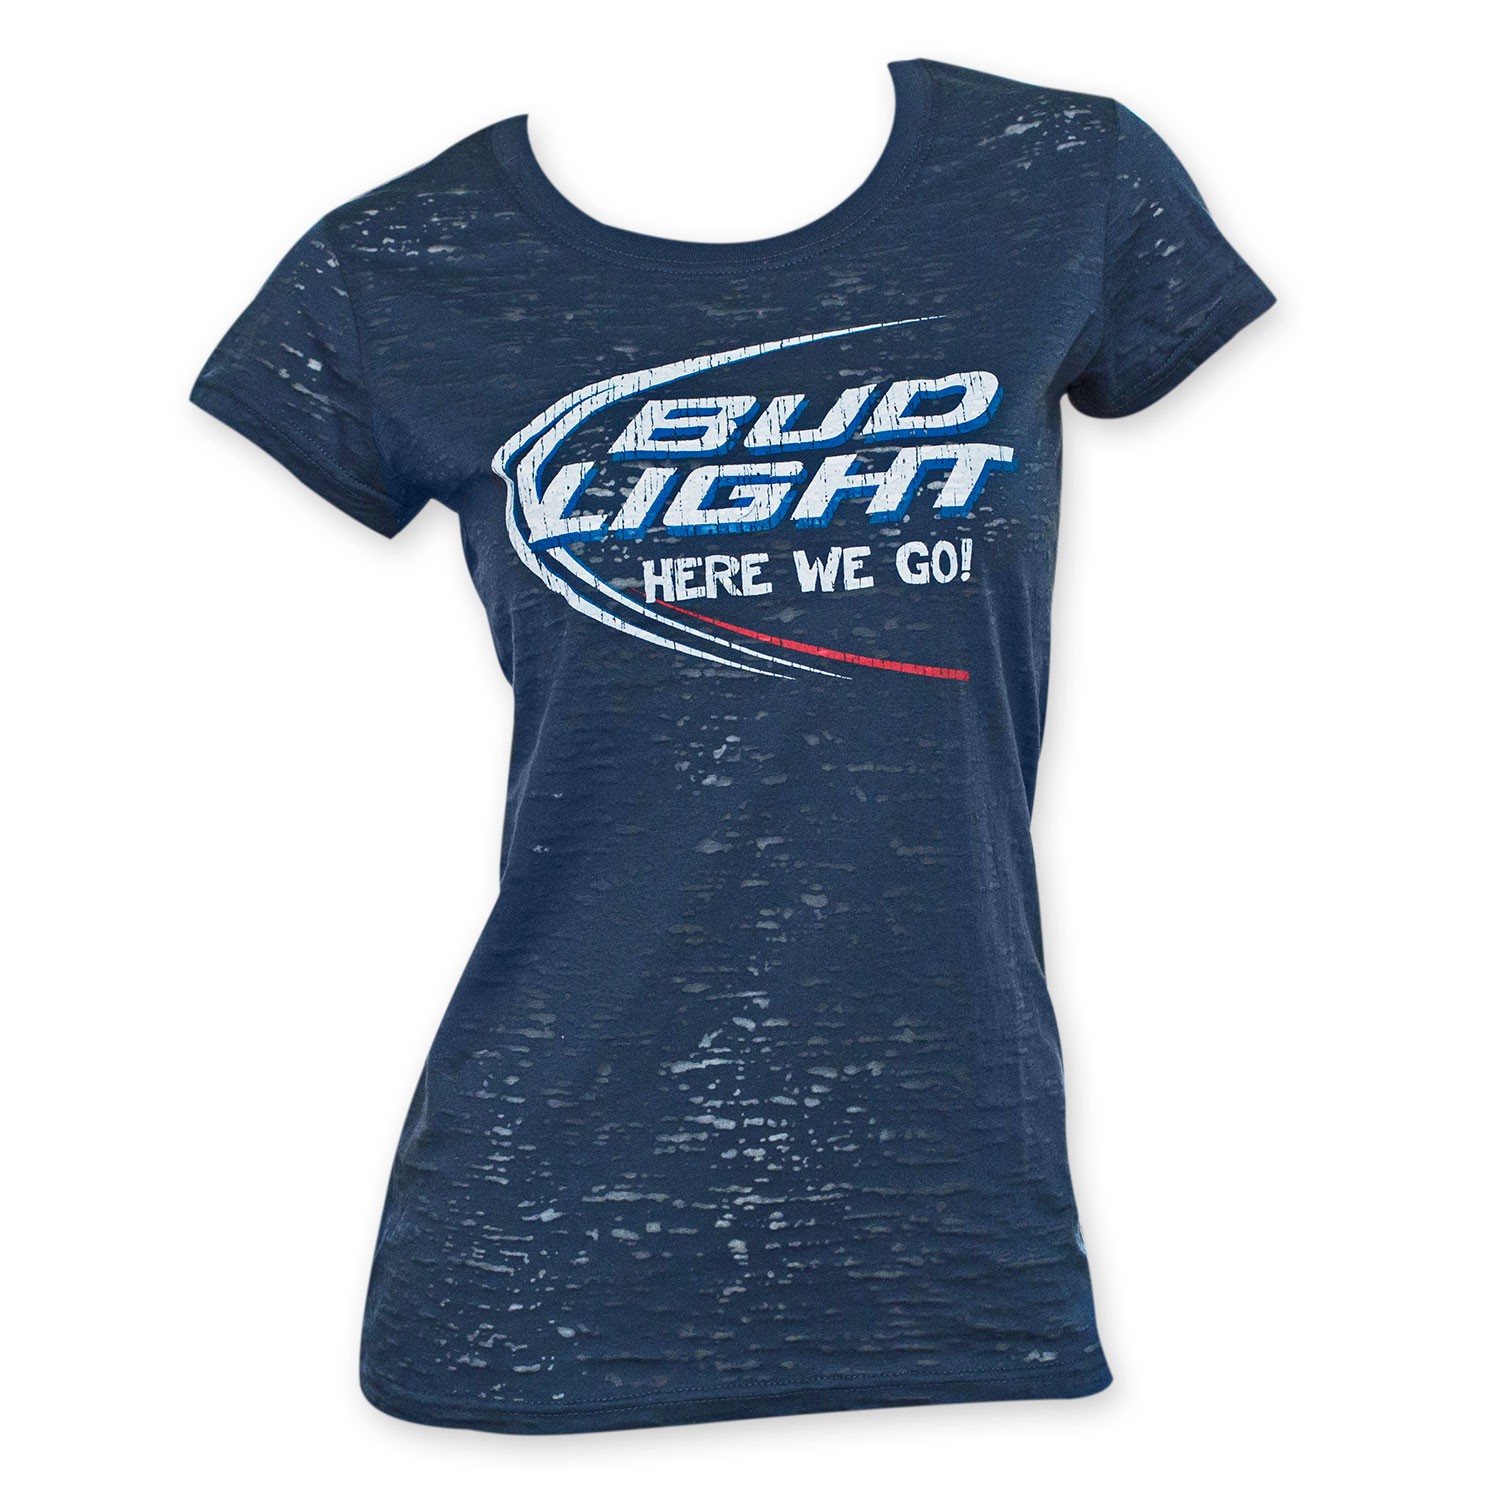 Bud Light Women's Navy Blue Burnout Tee Shirt